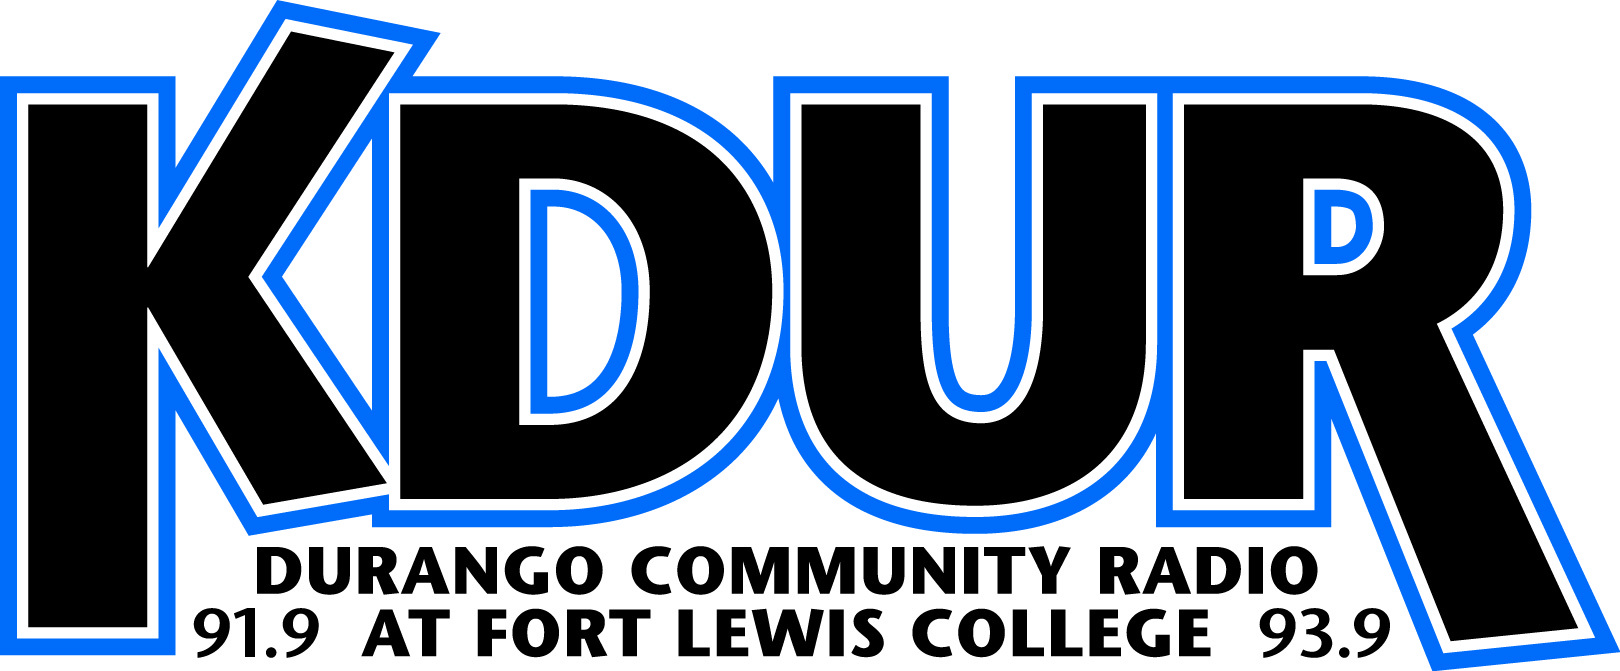 KDUR Durango Community Radio at Fort Lewis College, 91.9 and 93.9 FM